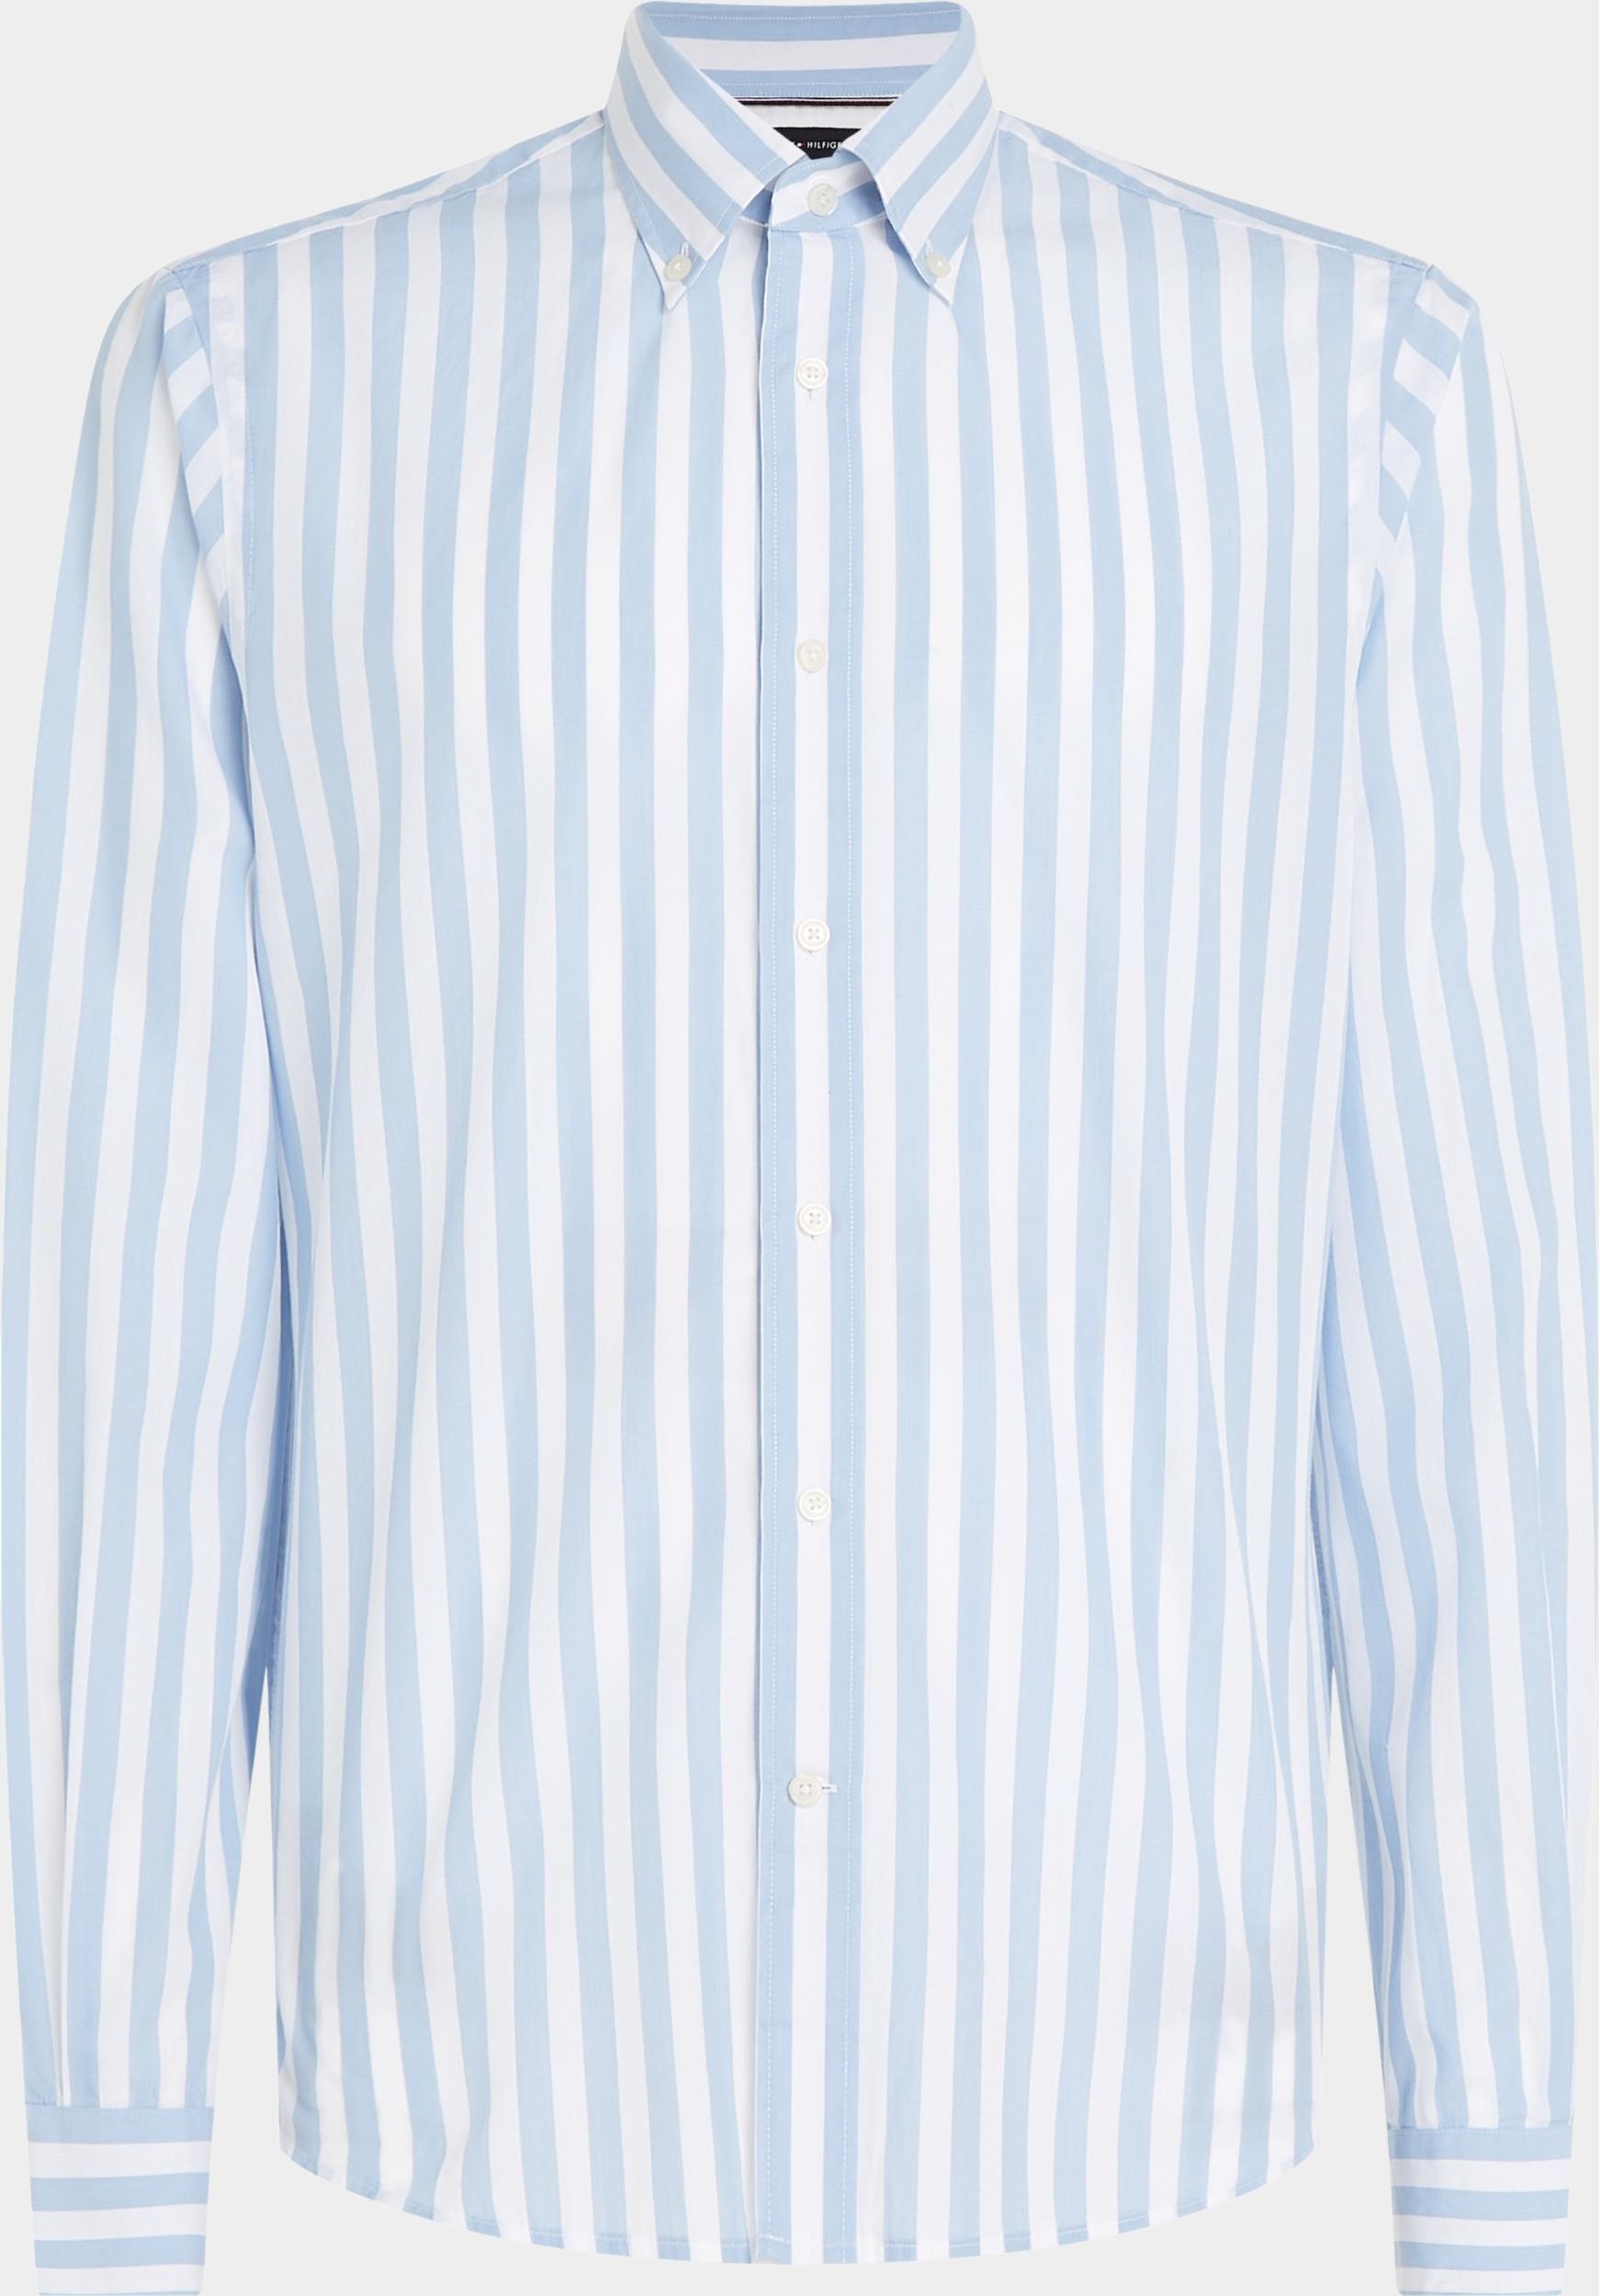 Tommy Hilfiger Casual hemd lange mouw Blauw DC Silky Bold Stripe MW0MW31908/0A4